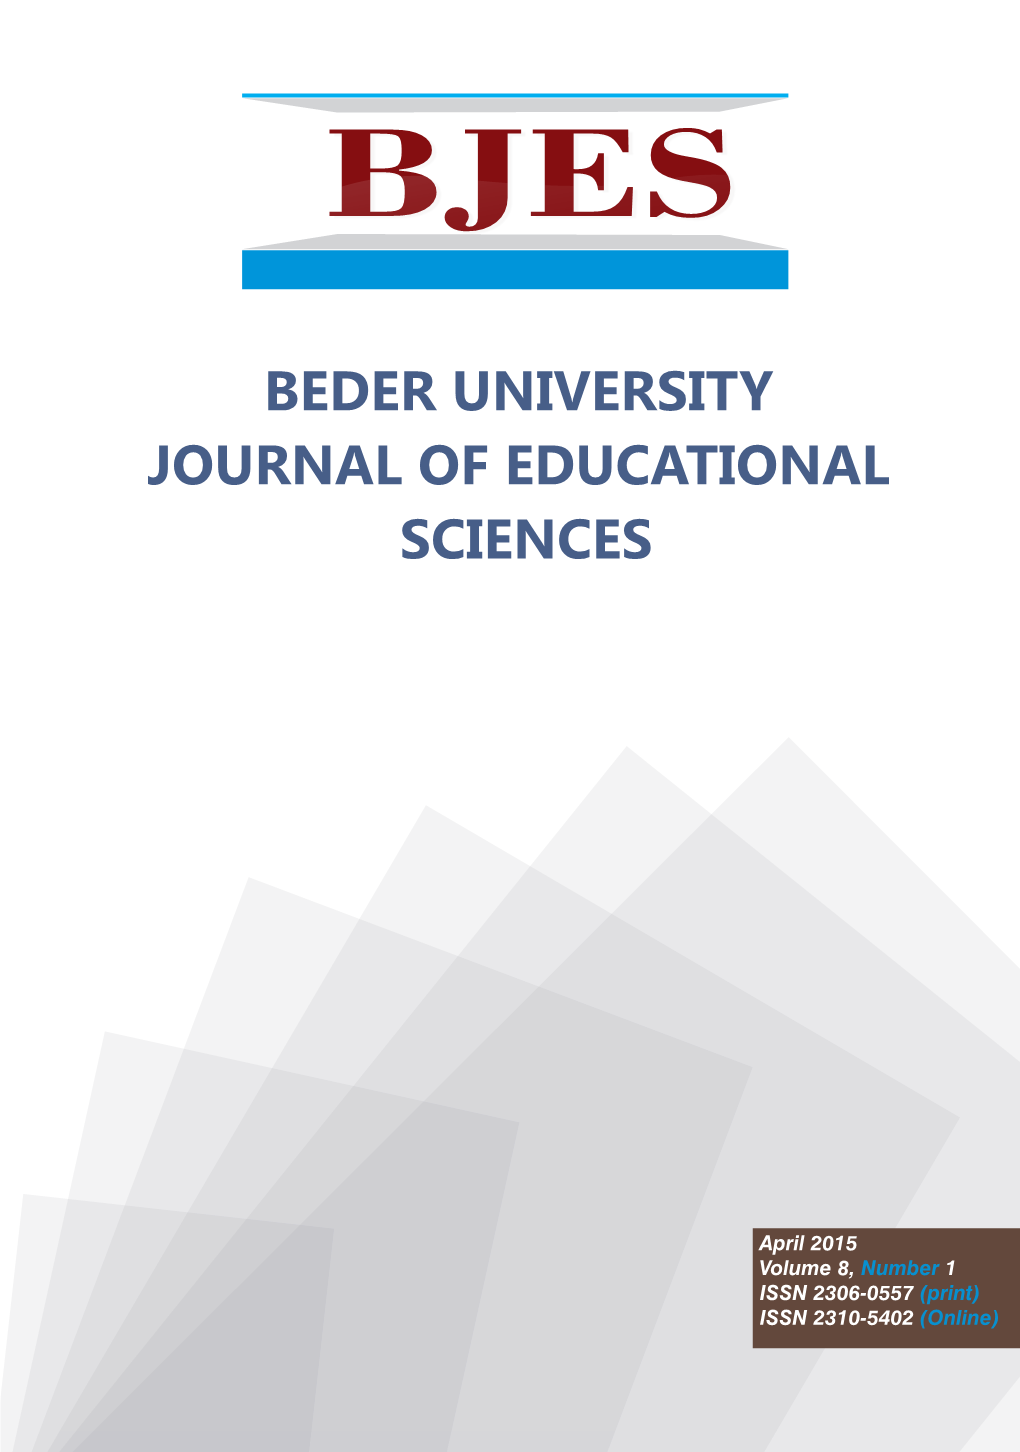 BJES Beder University JOURNAL of EDUCATIONAL SCIENCES